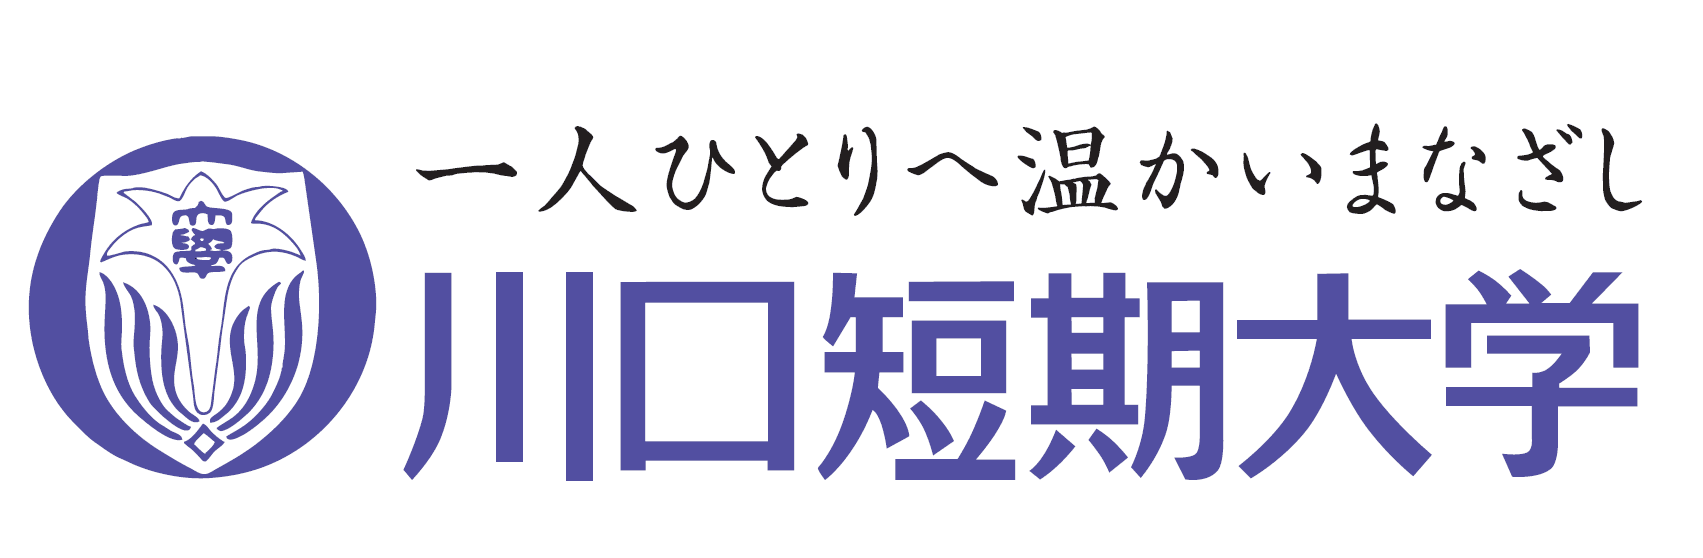 川口短期大学 公式ホームページ